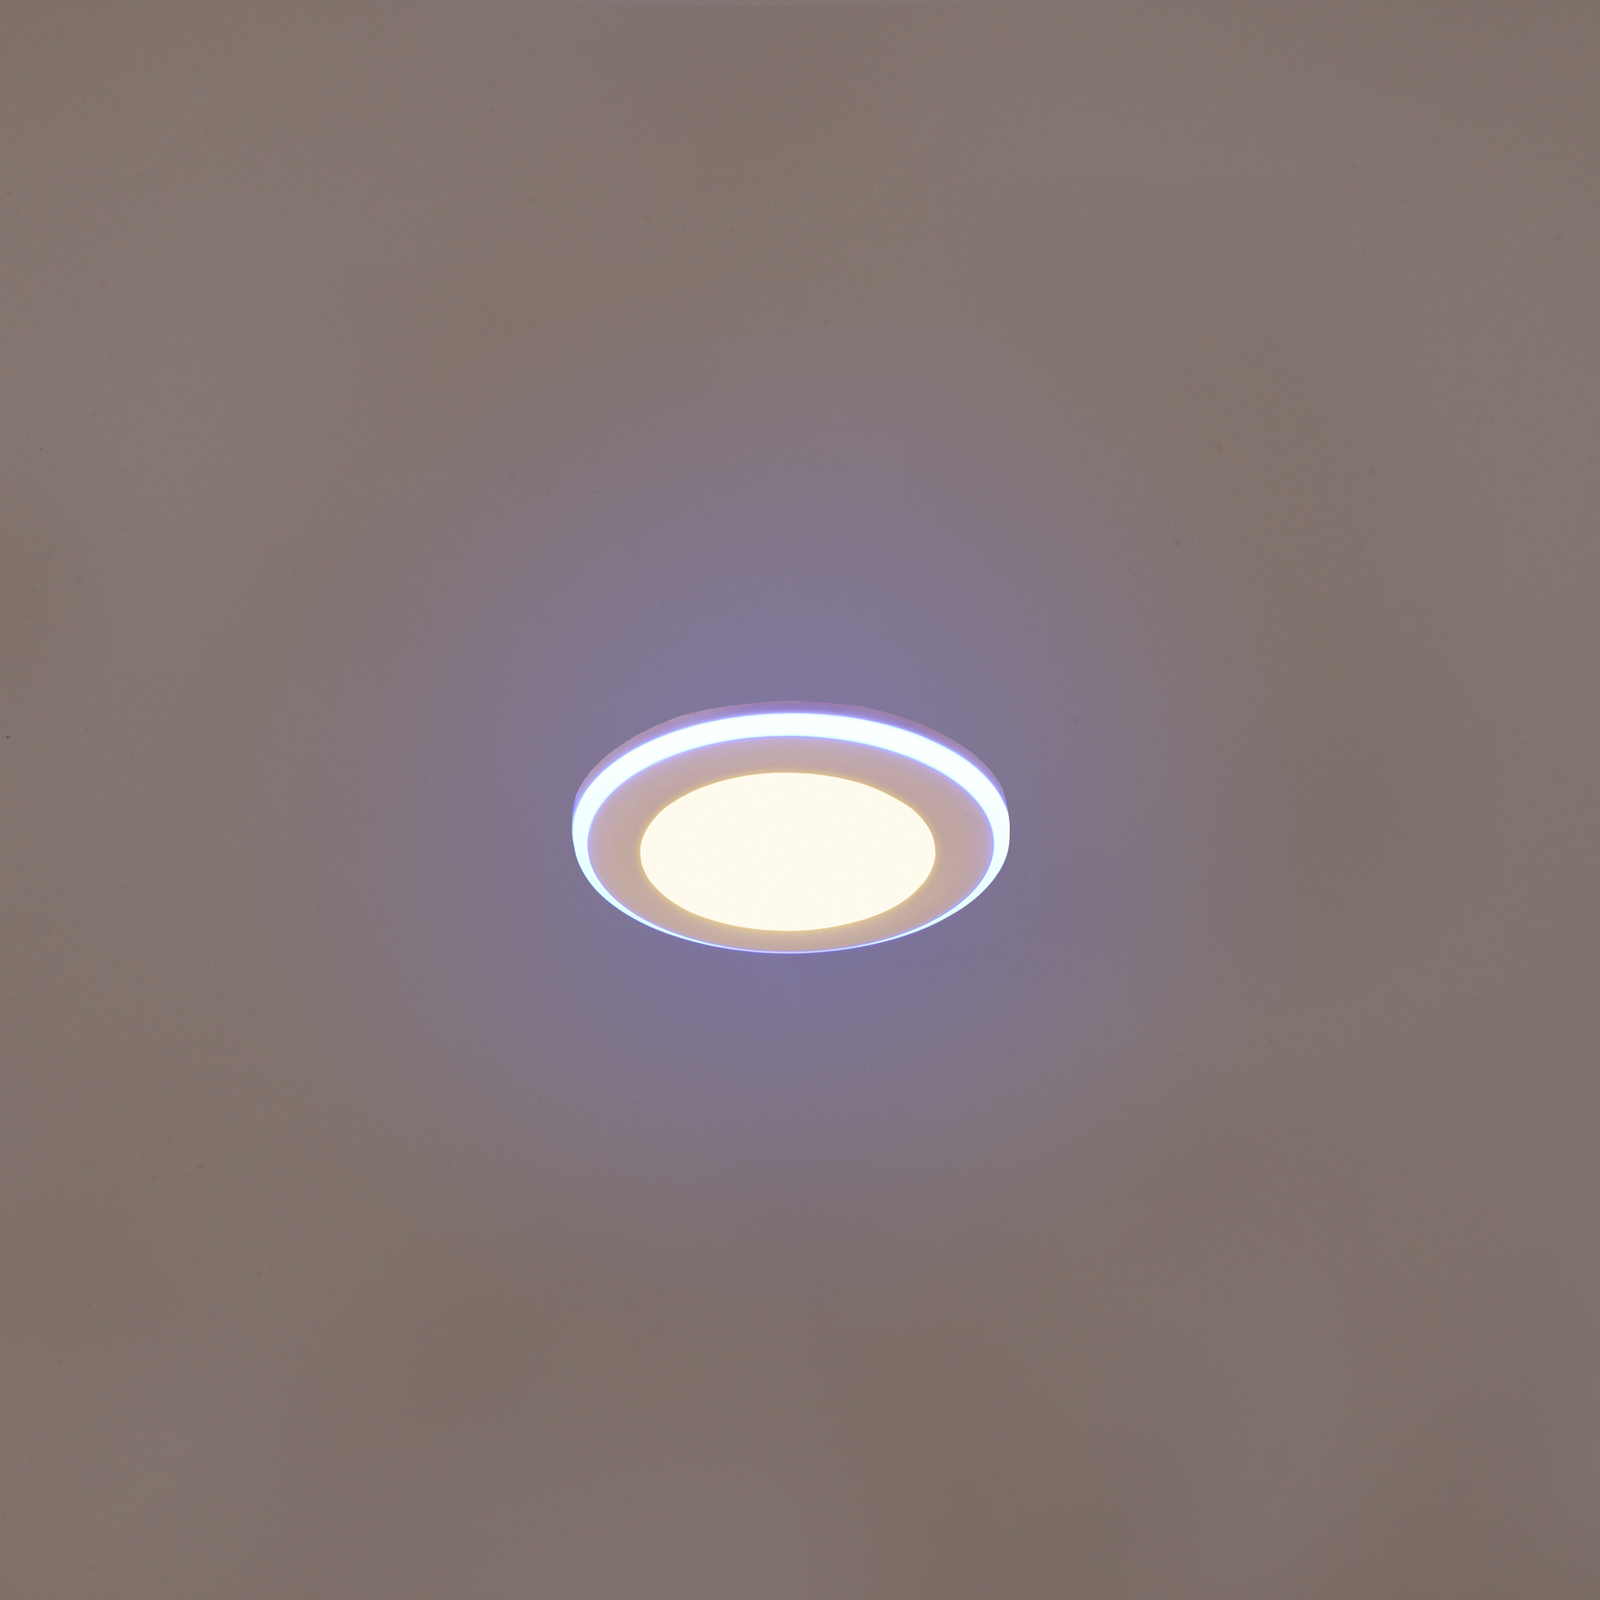 LED downlight Argus RGBW afstandsbed. Ø8cm wit